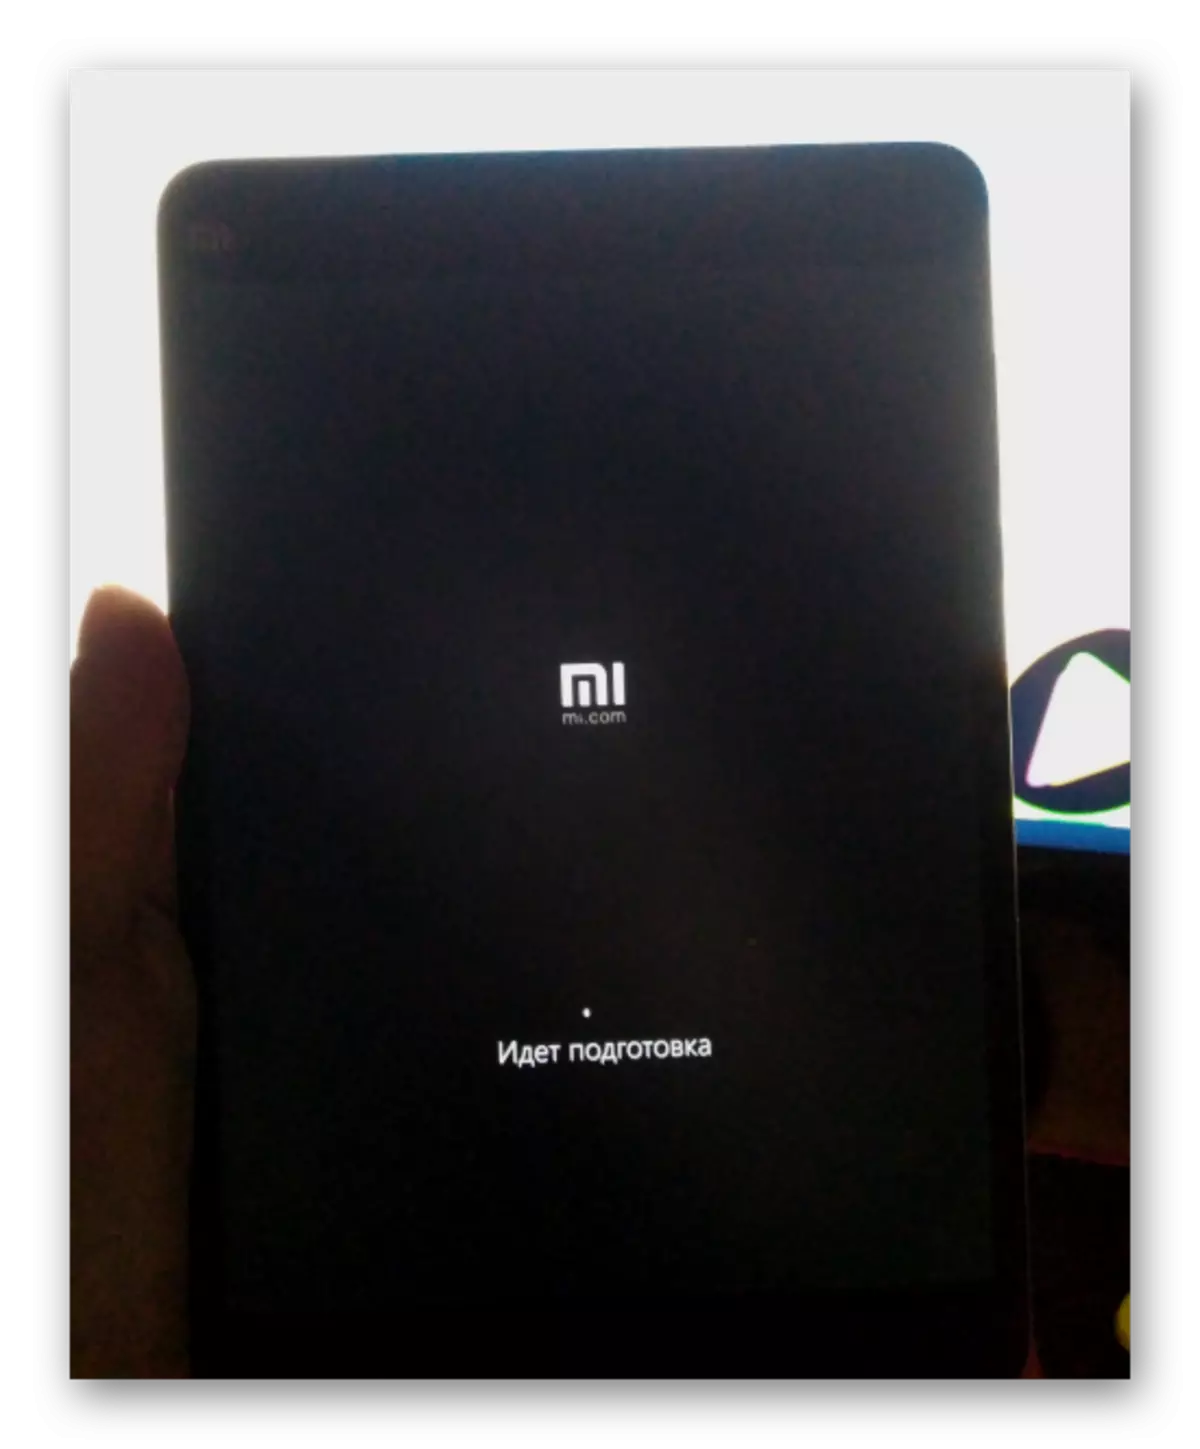 Xiaomi Mipa Igbese 2 ti fifi sori ẹrọ ti Windows 10 lẹhin atunbere